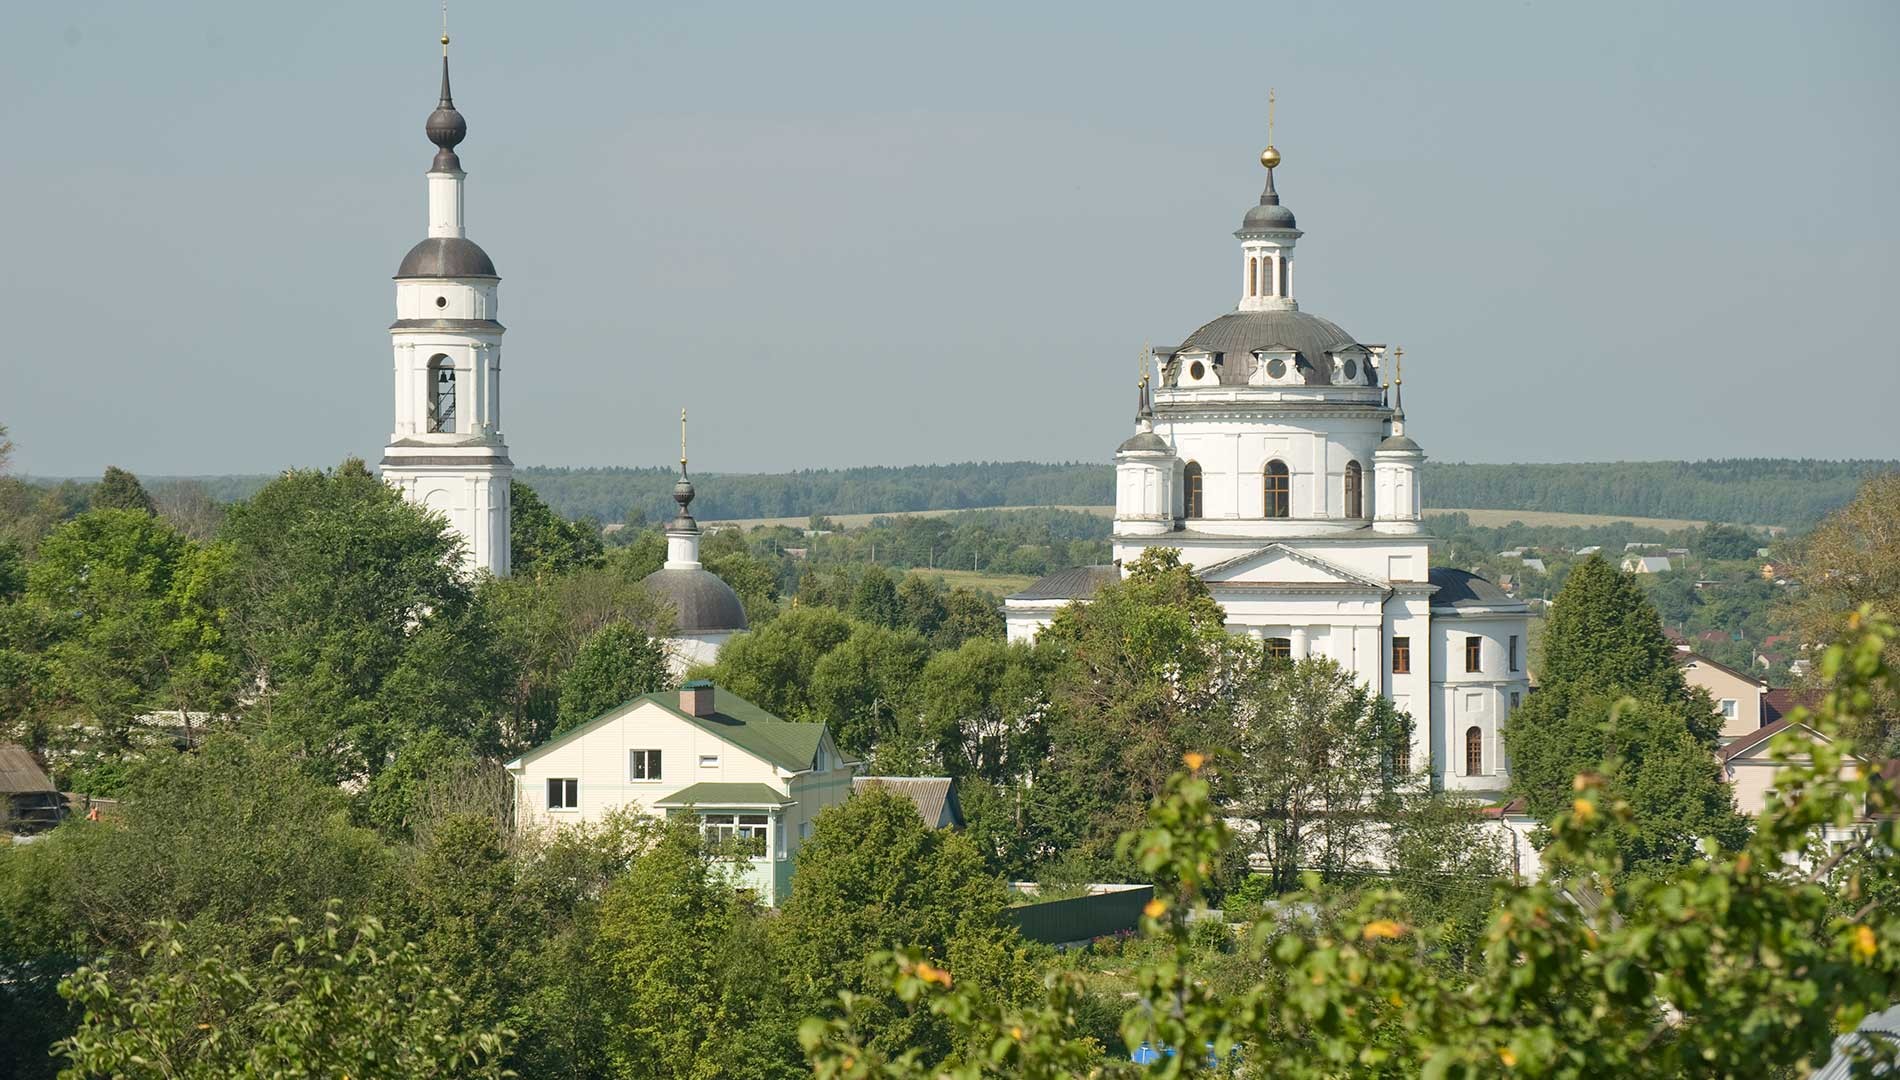 Malojaroslavets. Convento di San Nicola-Chernoostrovskij. Campanile e Cattedrale di San Nicola, vista sud. 7 agosto 2016